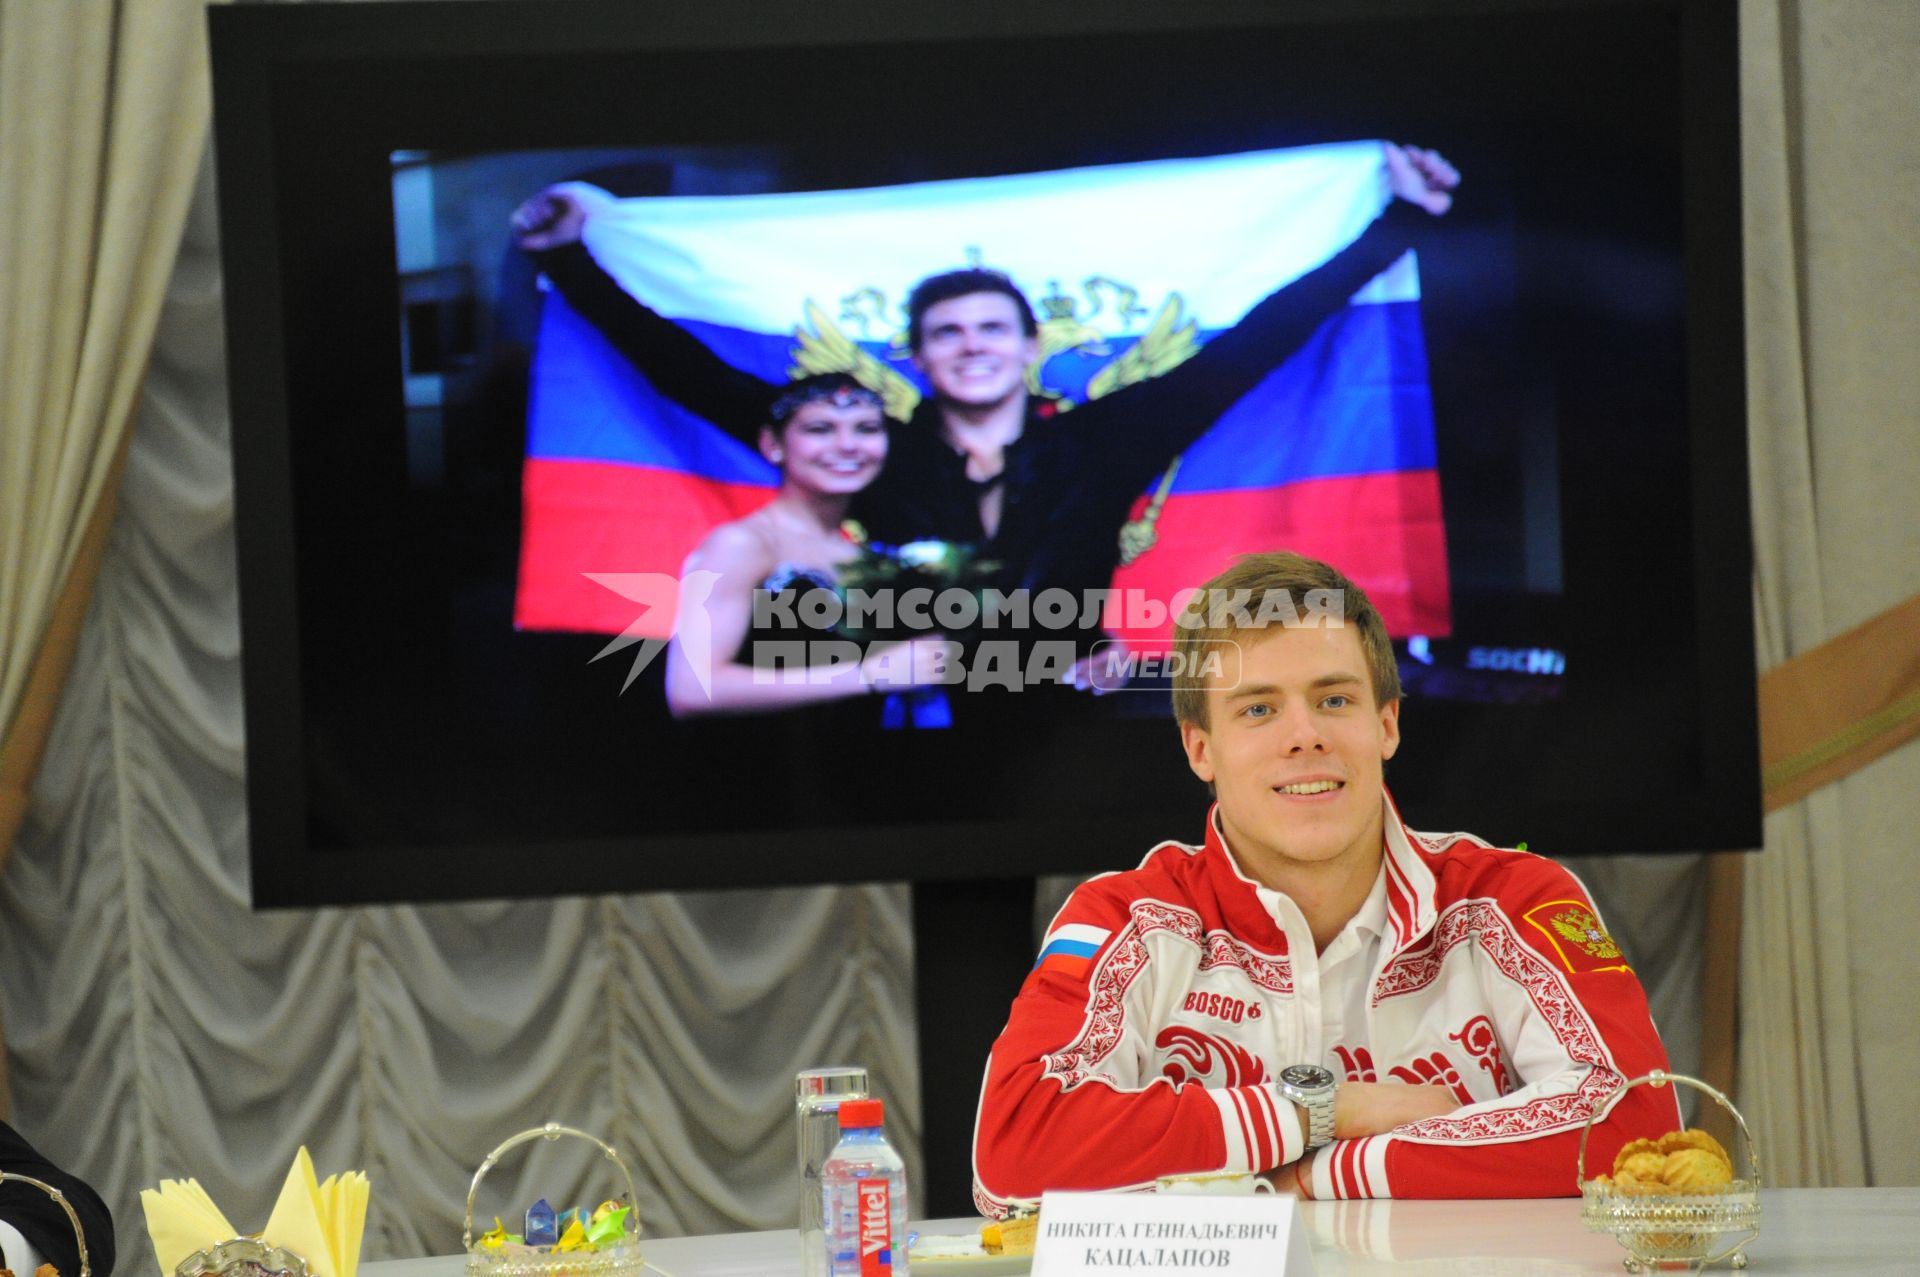 Мэр Москвы встретился с победителями и призерами Олимпийских игр в Сочи. На снимке: фигурист Никита Кацалапов.